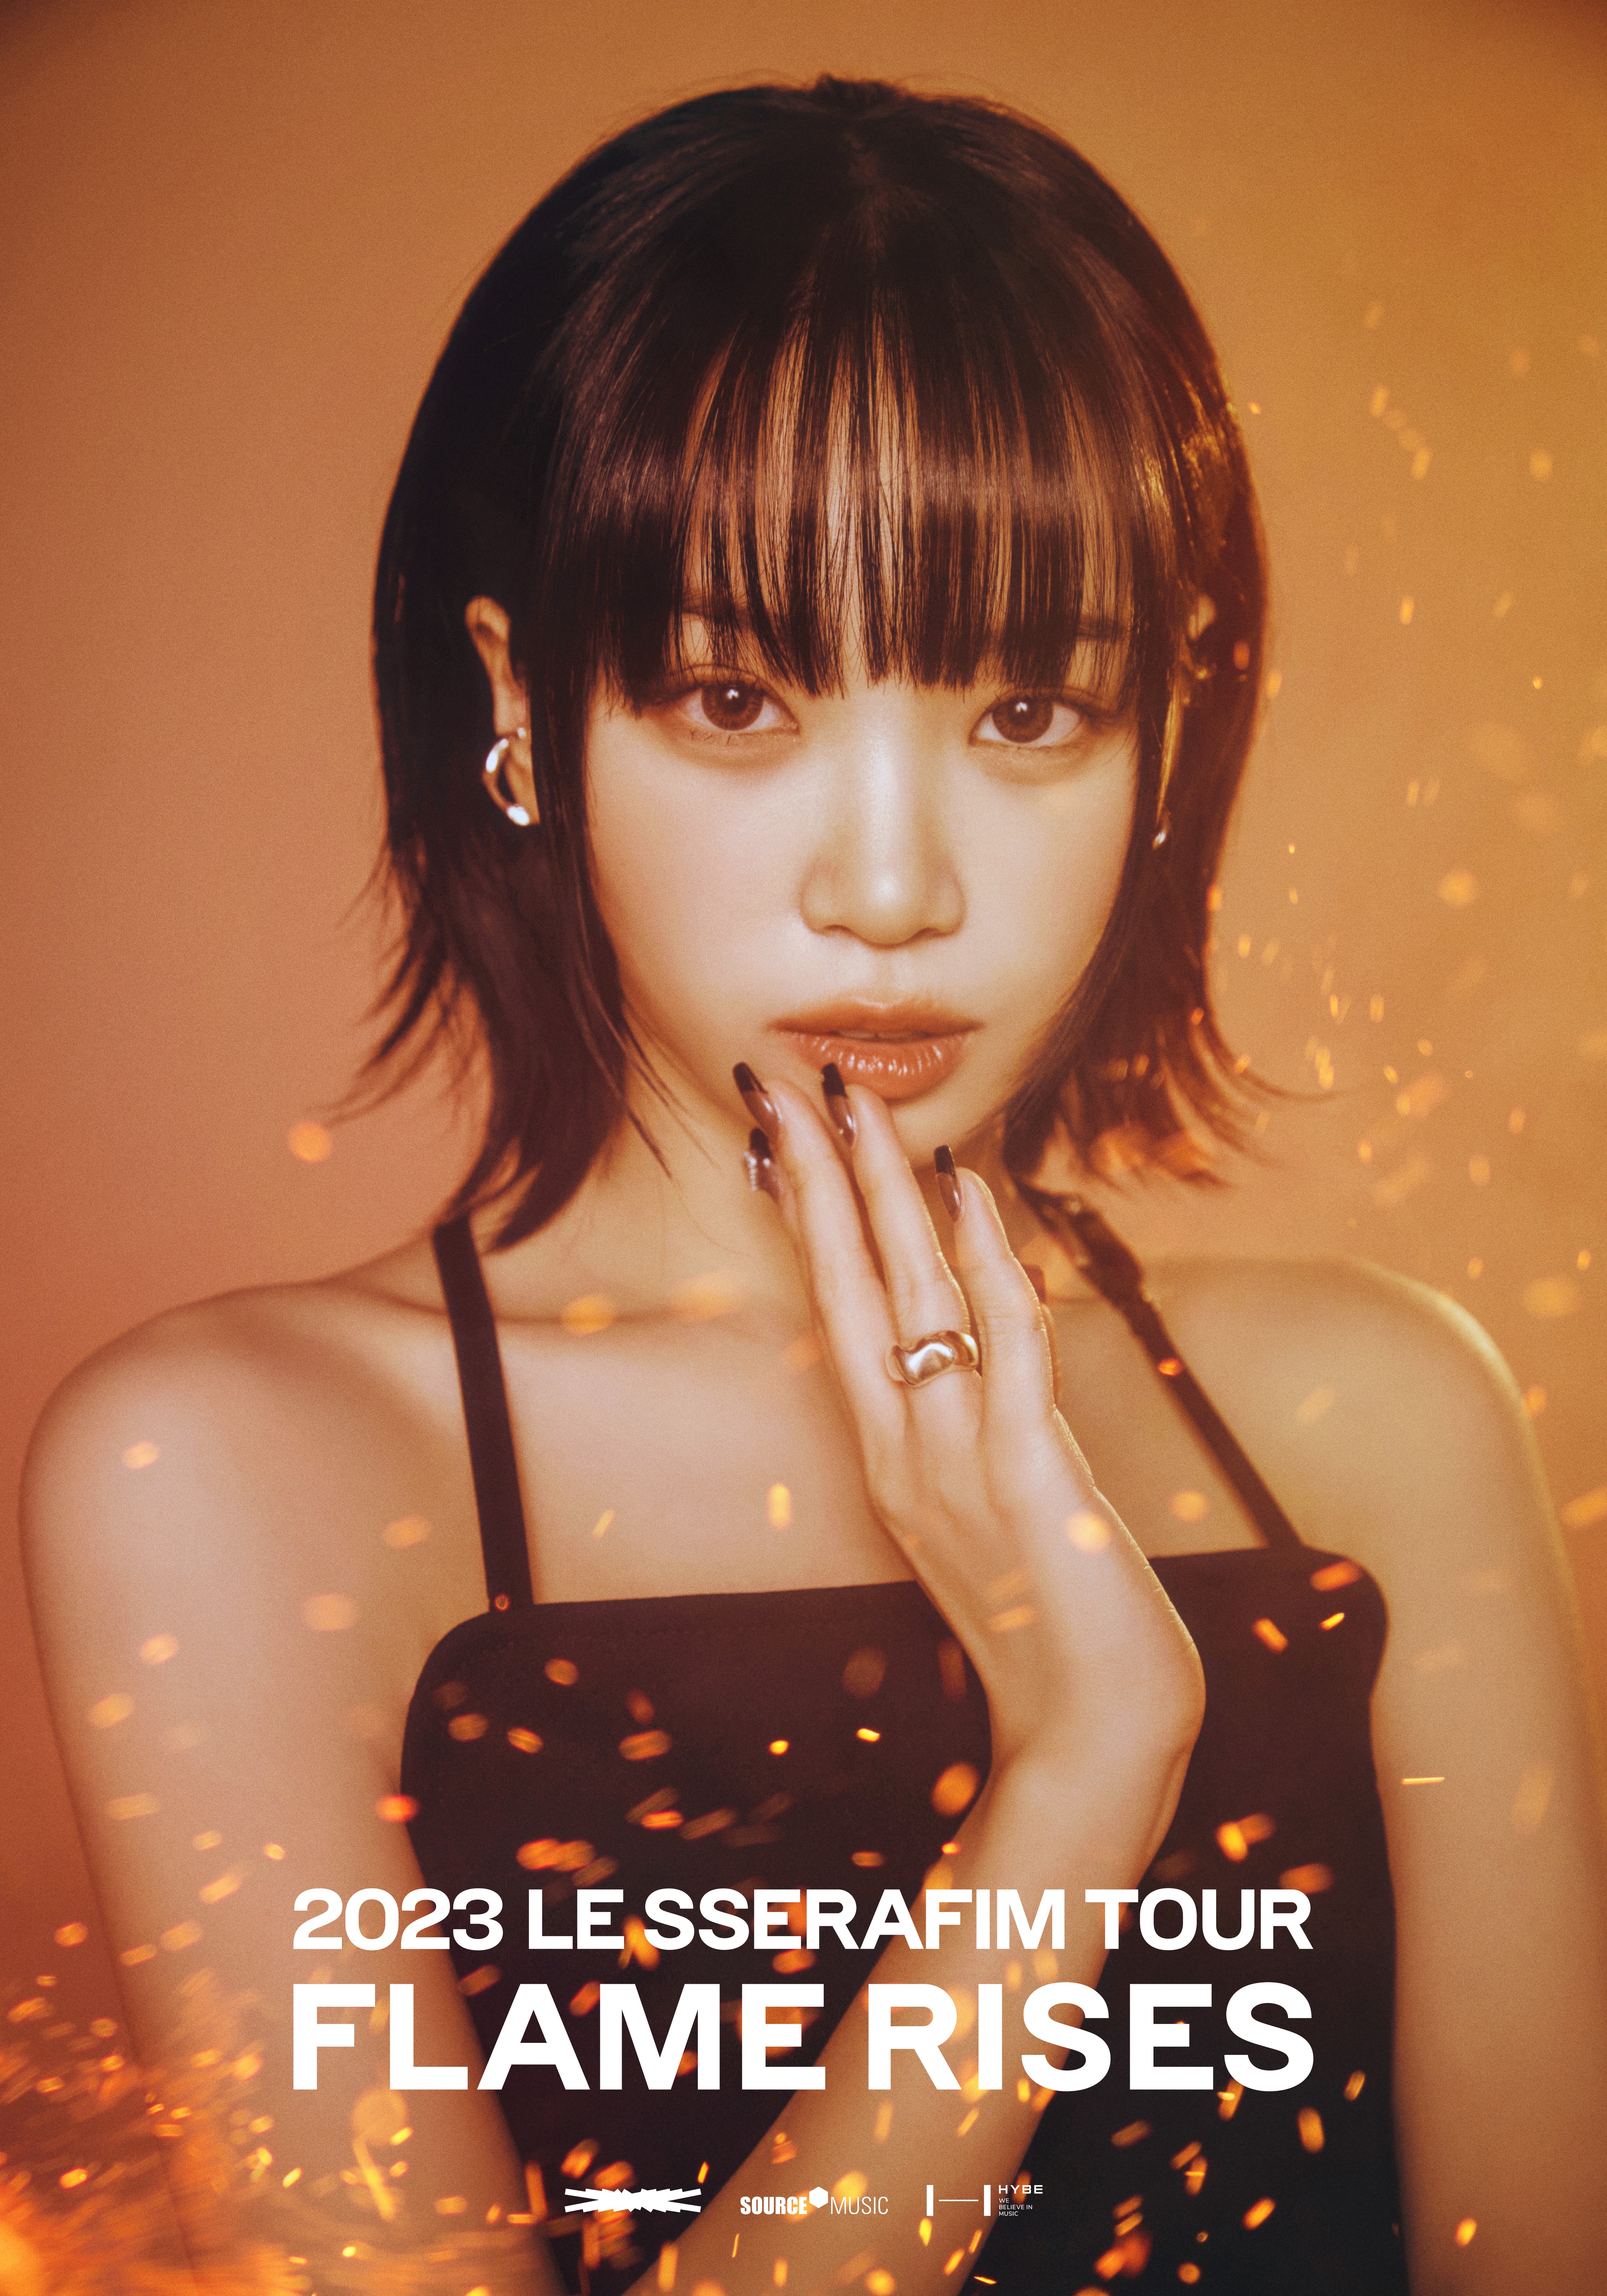 2023 LE SSERAFIM TOUR ‘FLAME RISES’ IN SEOUL KIM CHAEWON